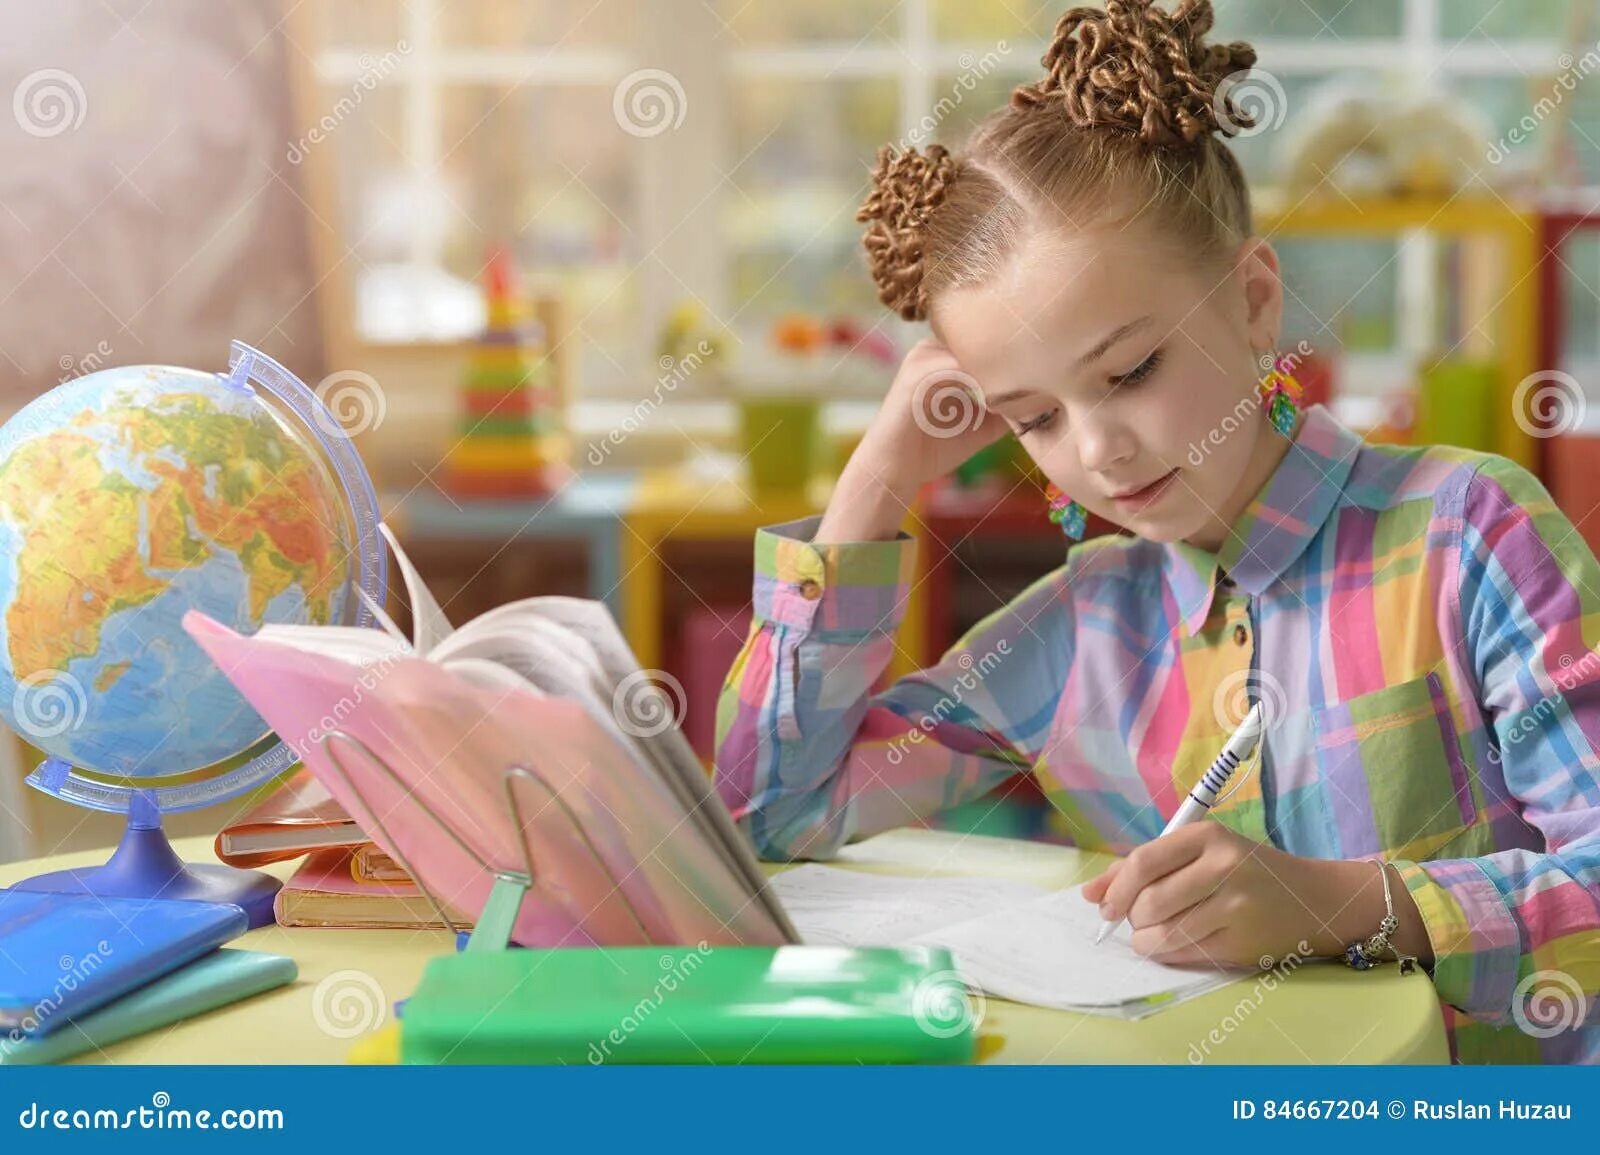 Делаем уроки алиса. Девочка делает уроки. Картинка девочек на видео уроке. Картинка девочка делает уроки. Картинка девочка делает уроки цветная картинка.